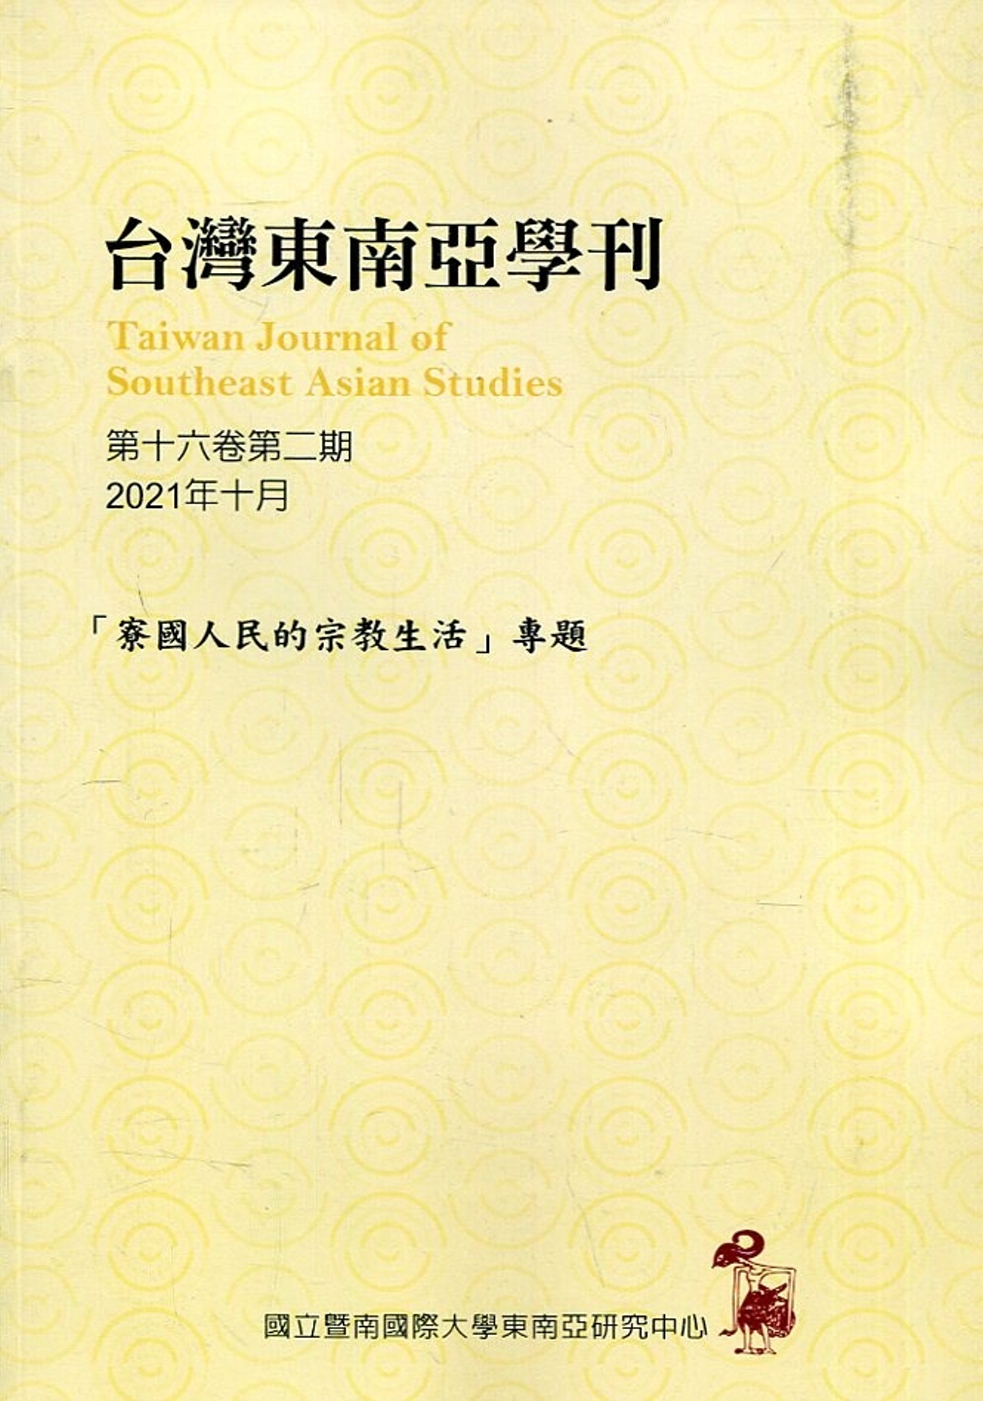 台灣東南亞學刊第16卷2期(2021/10)「寮國人民的宗教生活」專題